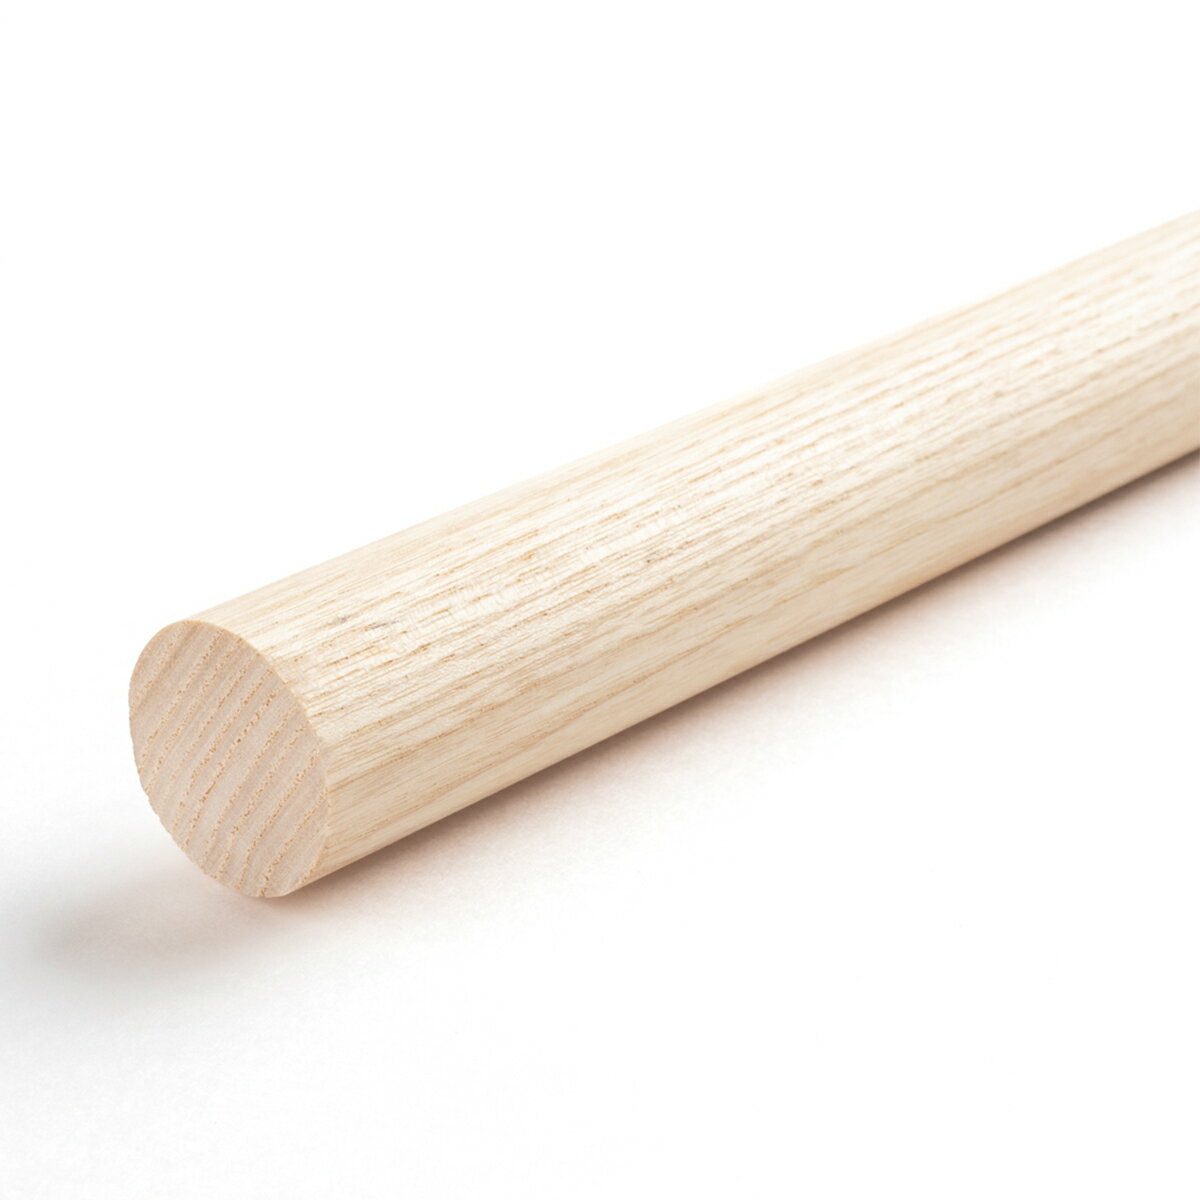 ホワイトアッシュ丸棒 直径28mm 910mm 1820mm DIY 木材 DIY用丸棒材 クラフト用丸棒 ウッドカービング用材 ウッドクラフト材料 高品質アッシュ丸棒